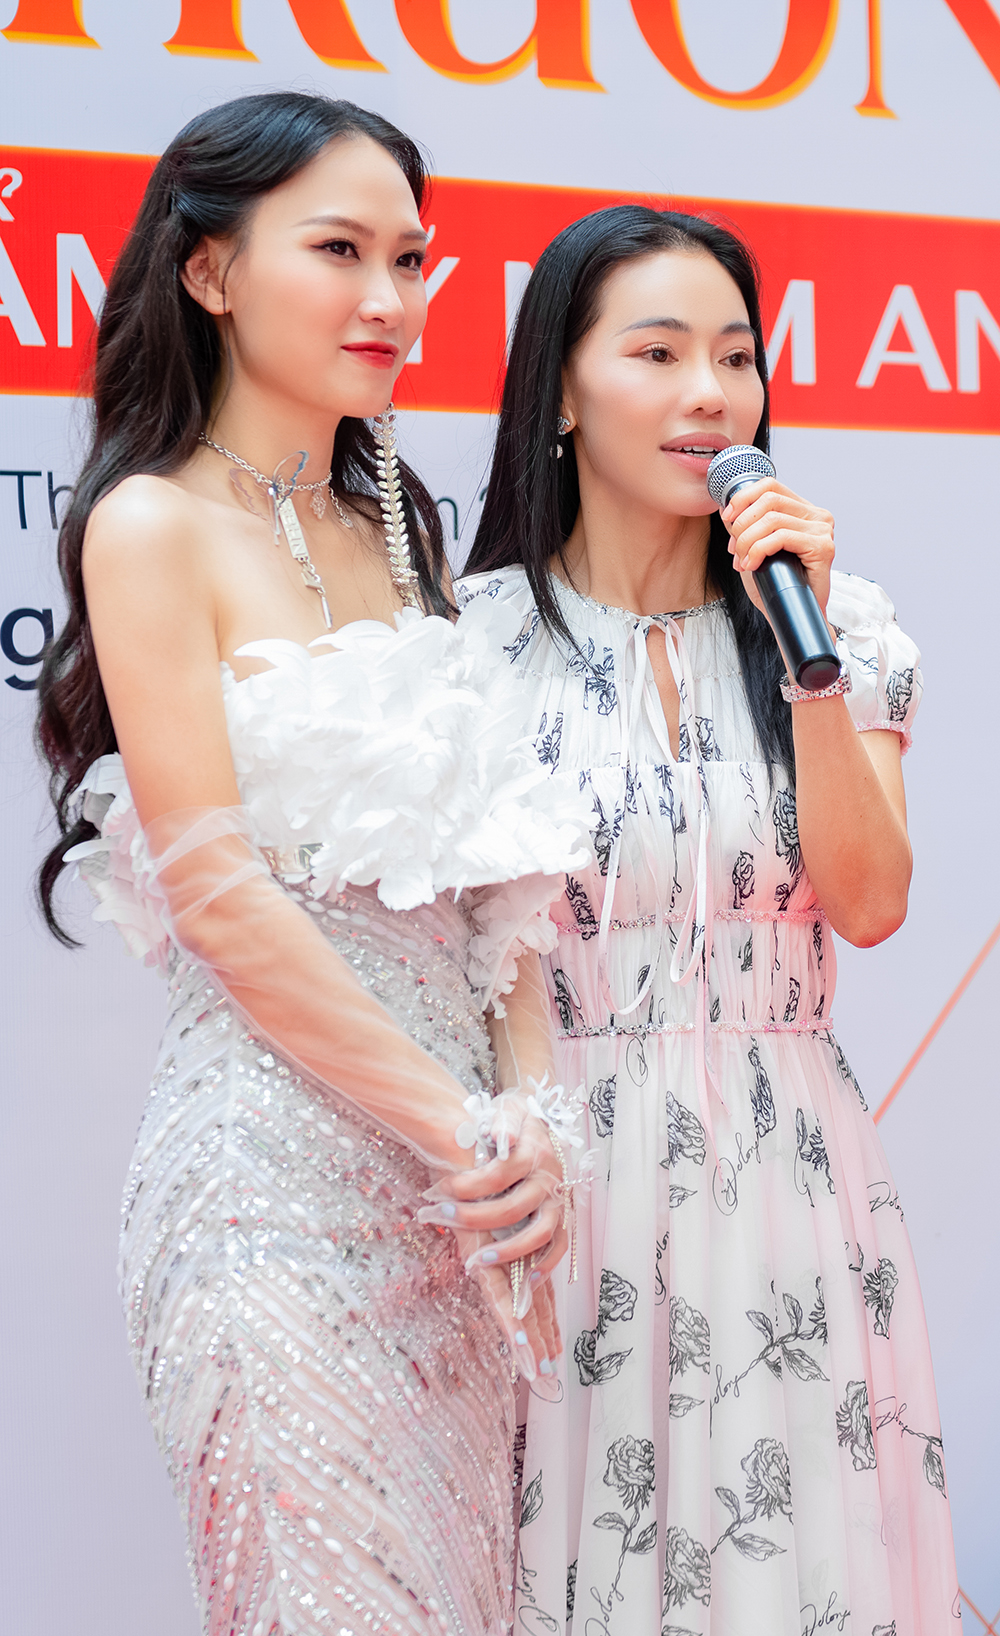 Hoa hậu Mai Phương đọ sắc với dàn hoa, á hậu, tiết lộ công việc tại VTV - Ảnh 6.